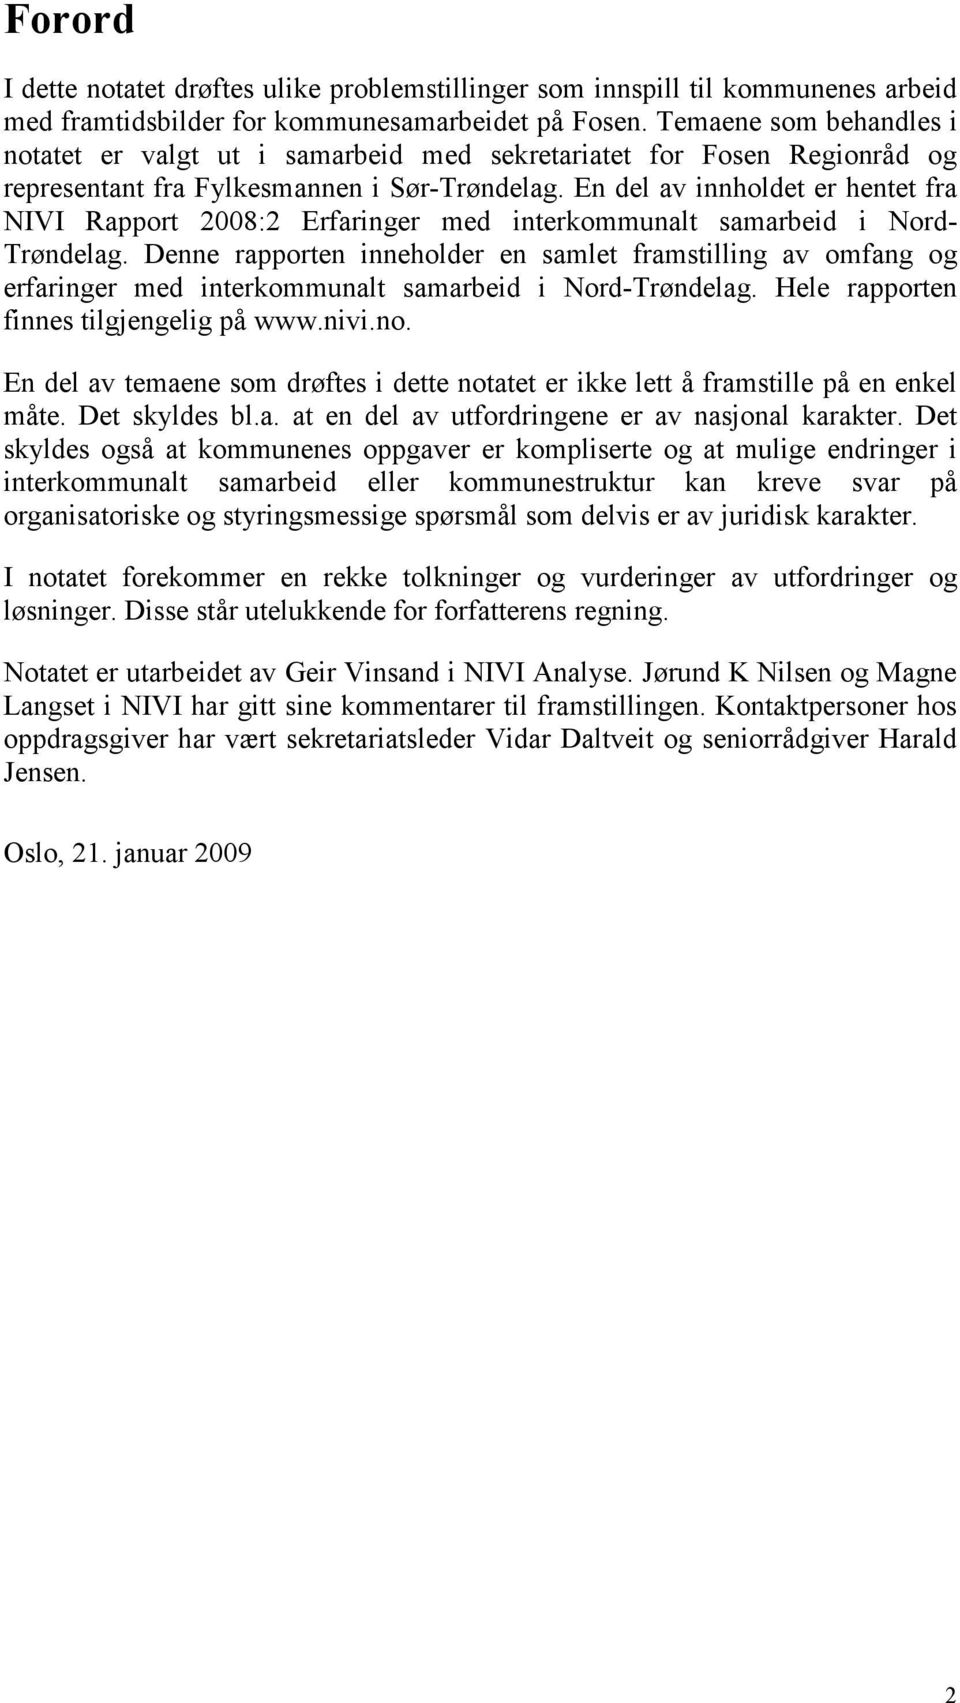 En del av innholdet er hentet fra NIVI Rapport 2008:2 Erfaringer med interkommunalt samarbeid i Nord- Trøndelag.